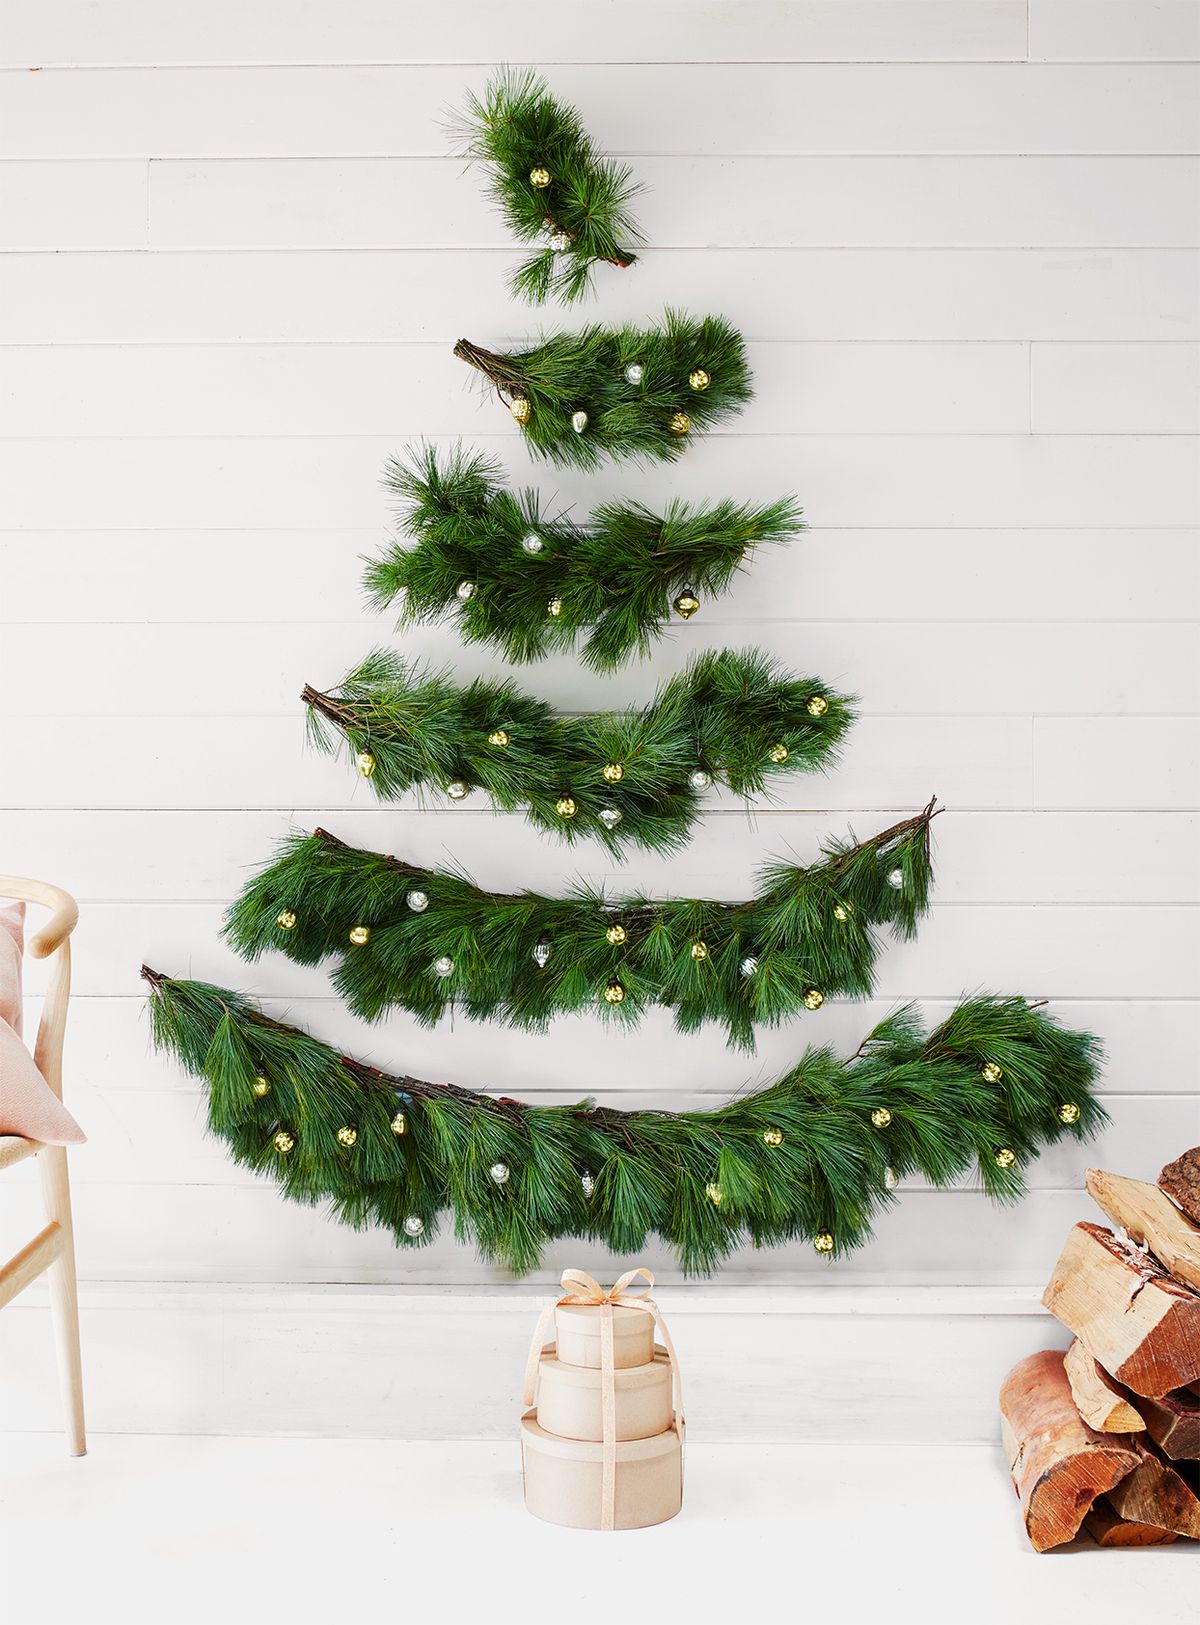 Wand-Weihnachtsbaum-Idee für kleine Räume